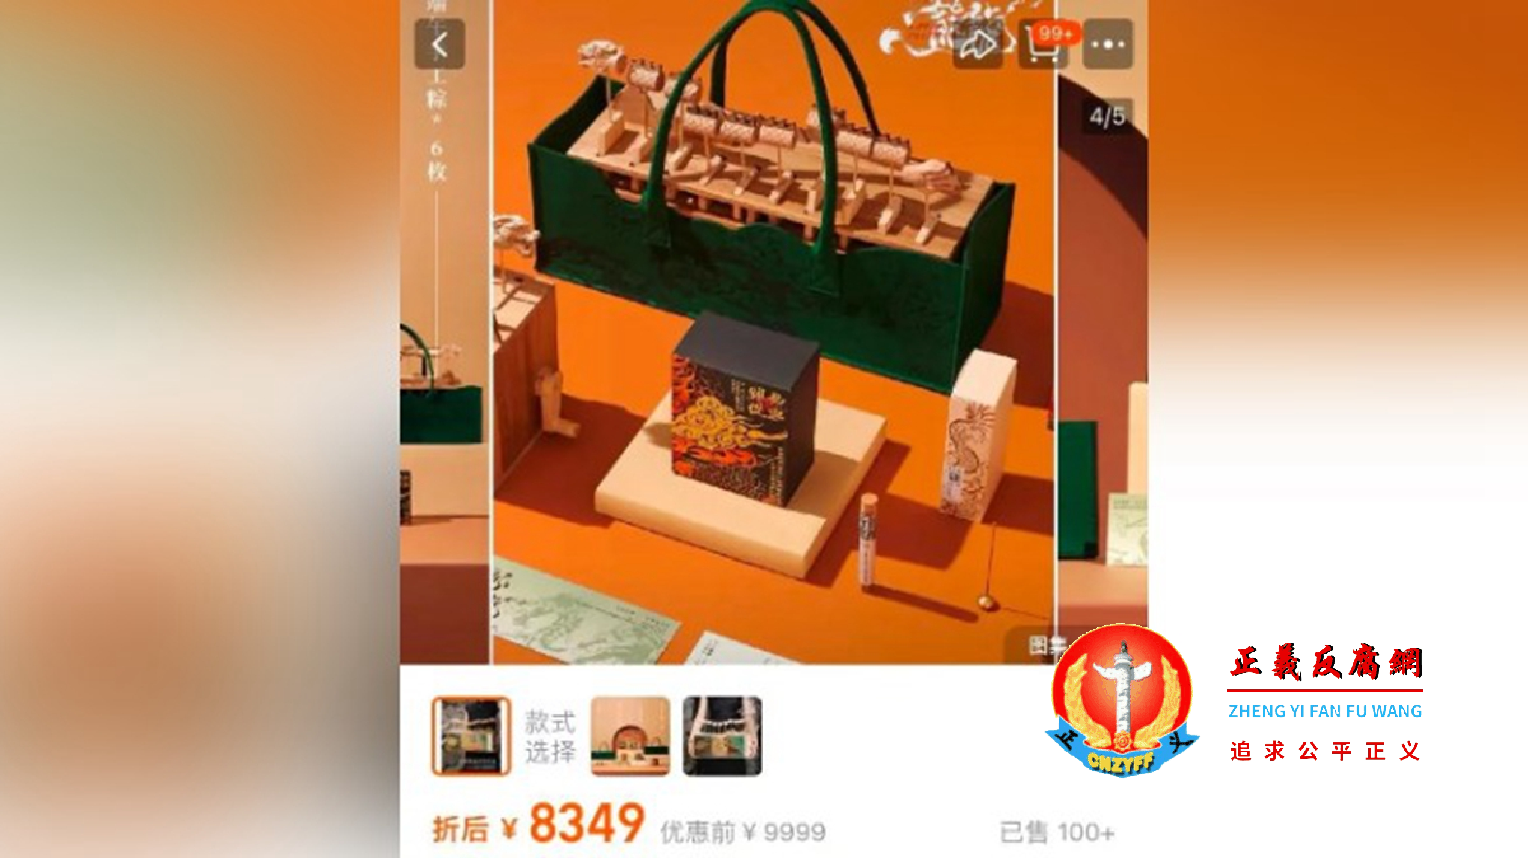 中国电商平台上标价8349元人民币的“龙行龘龘端午礼盒”。.png